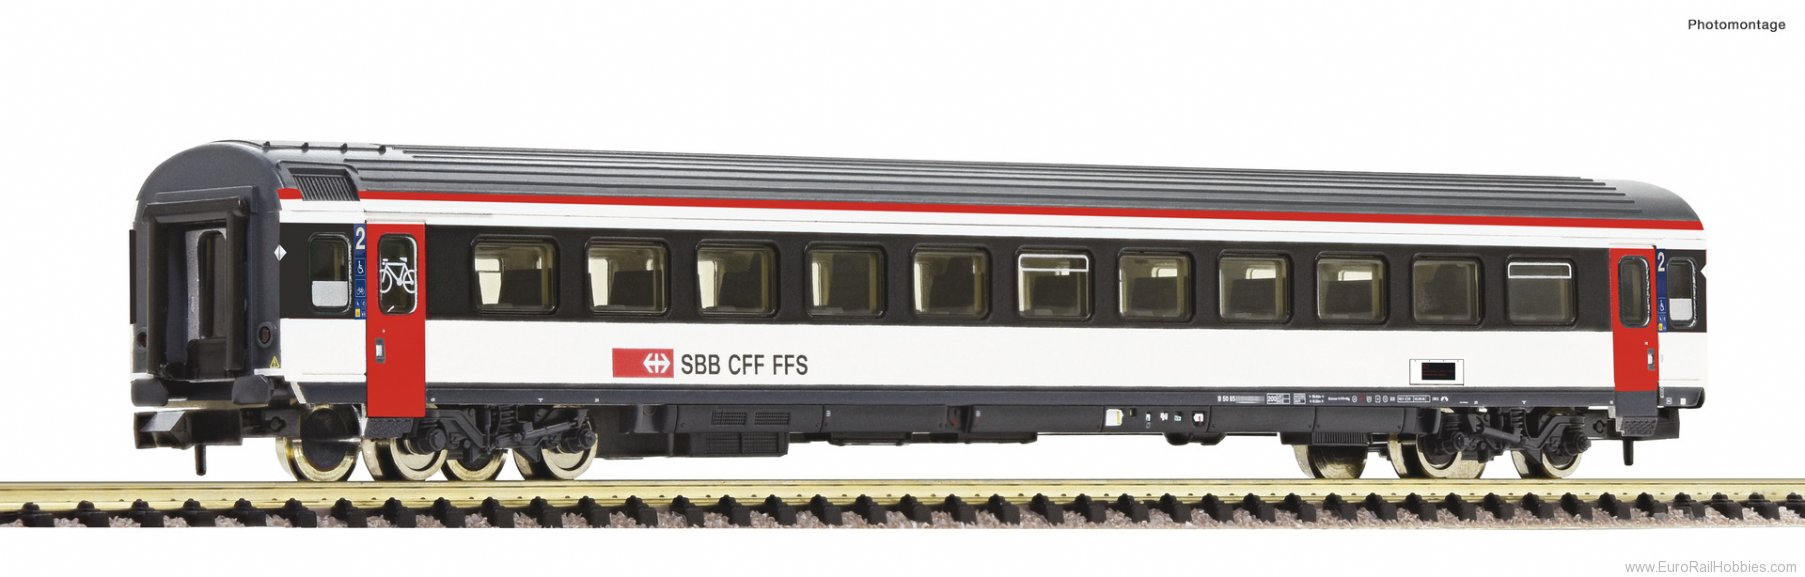 Fleischmann 6260016 2nd class passenger coach, SBB